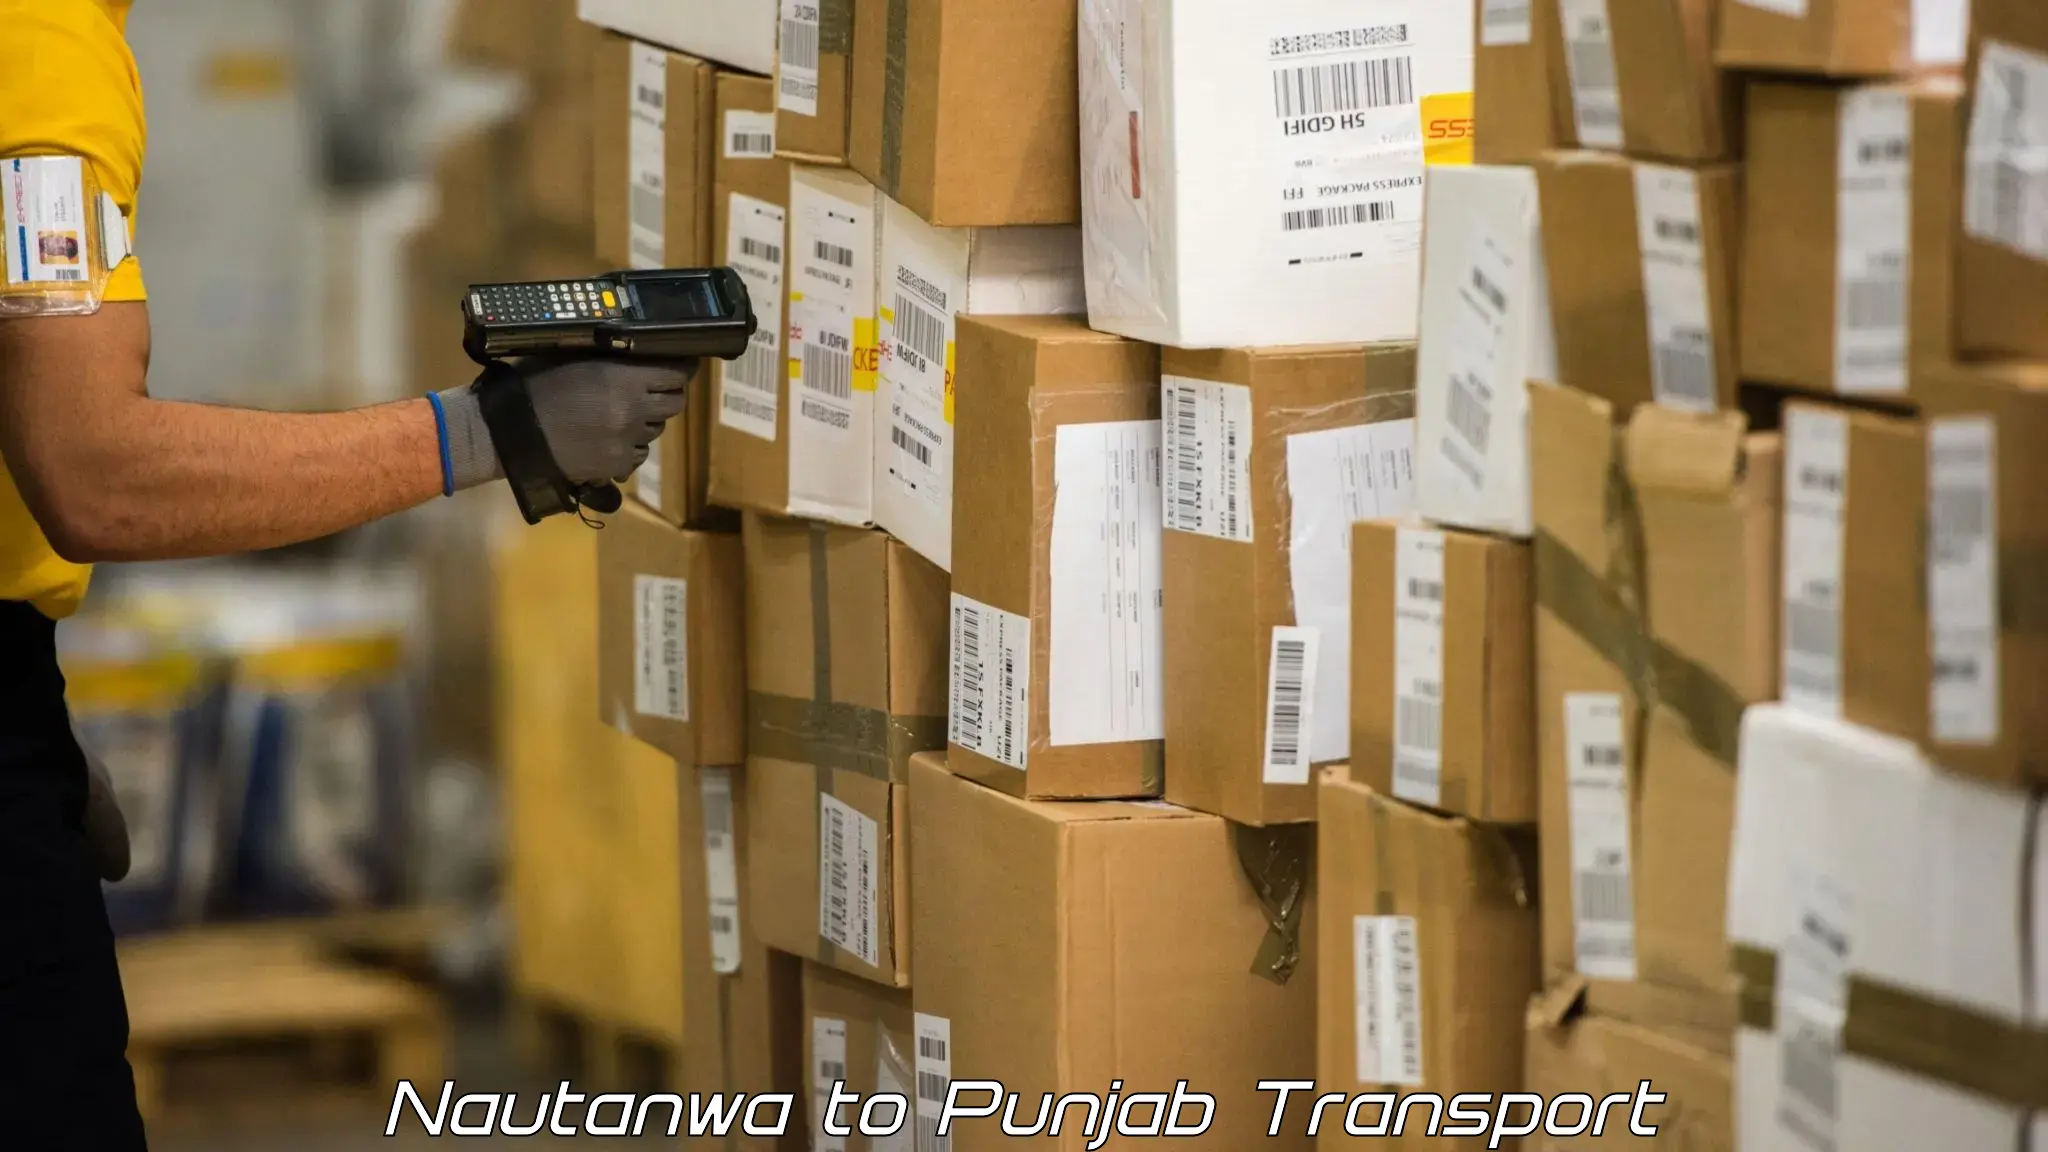 Lorry transport service in Nautanwa to Punjab